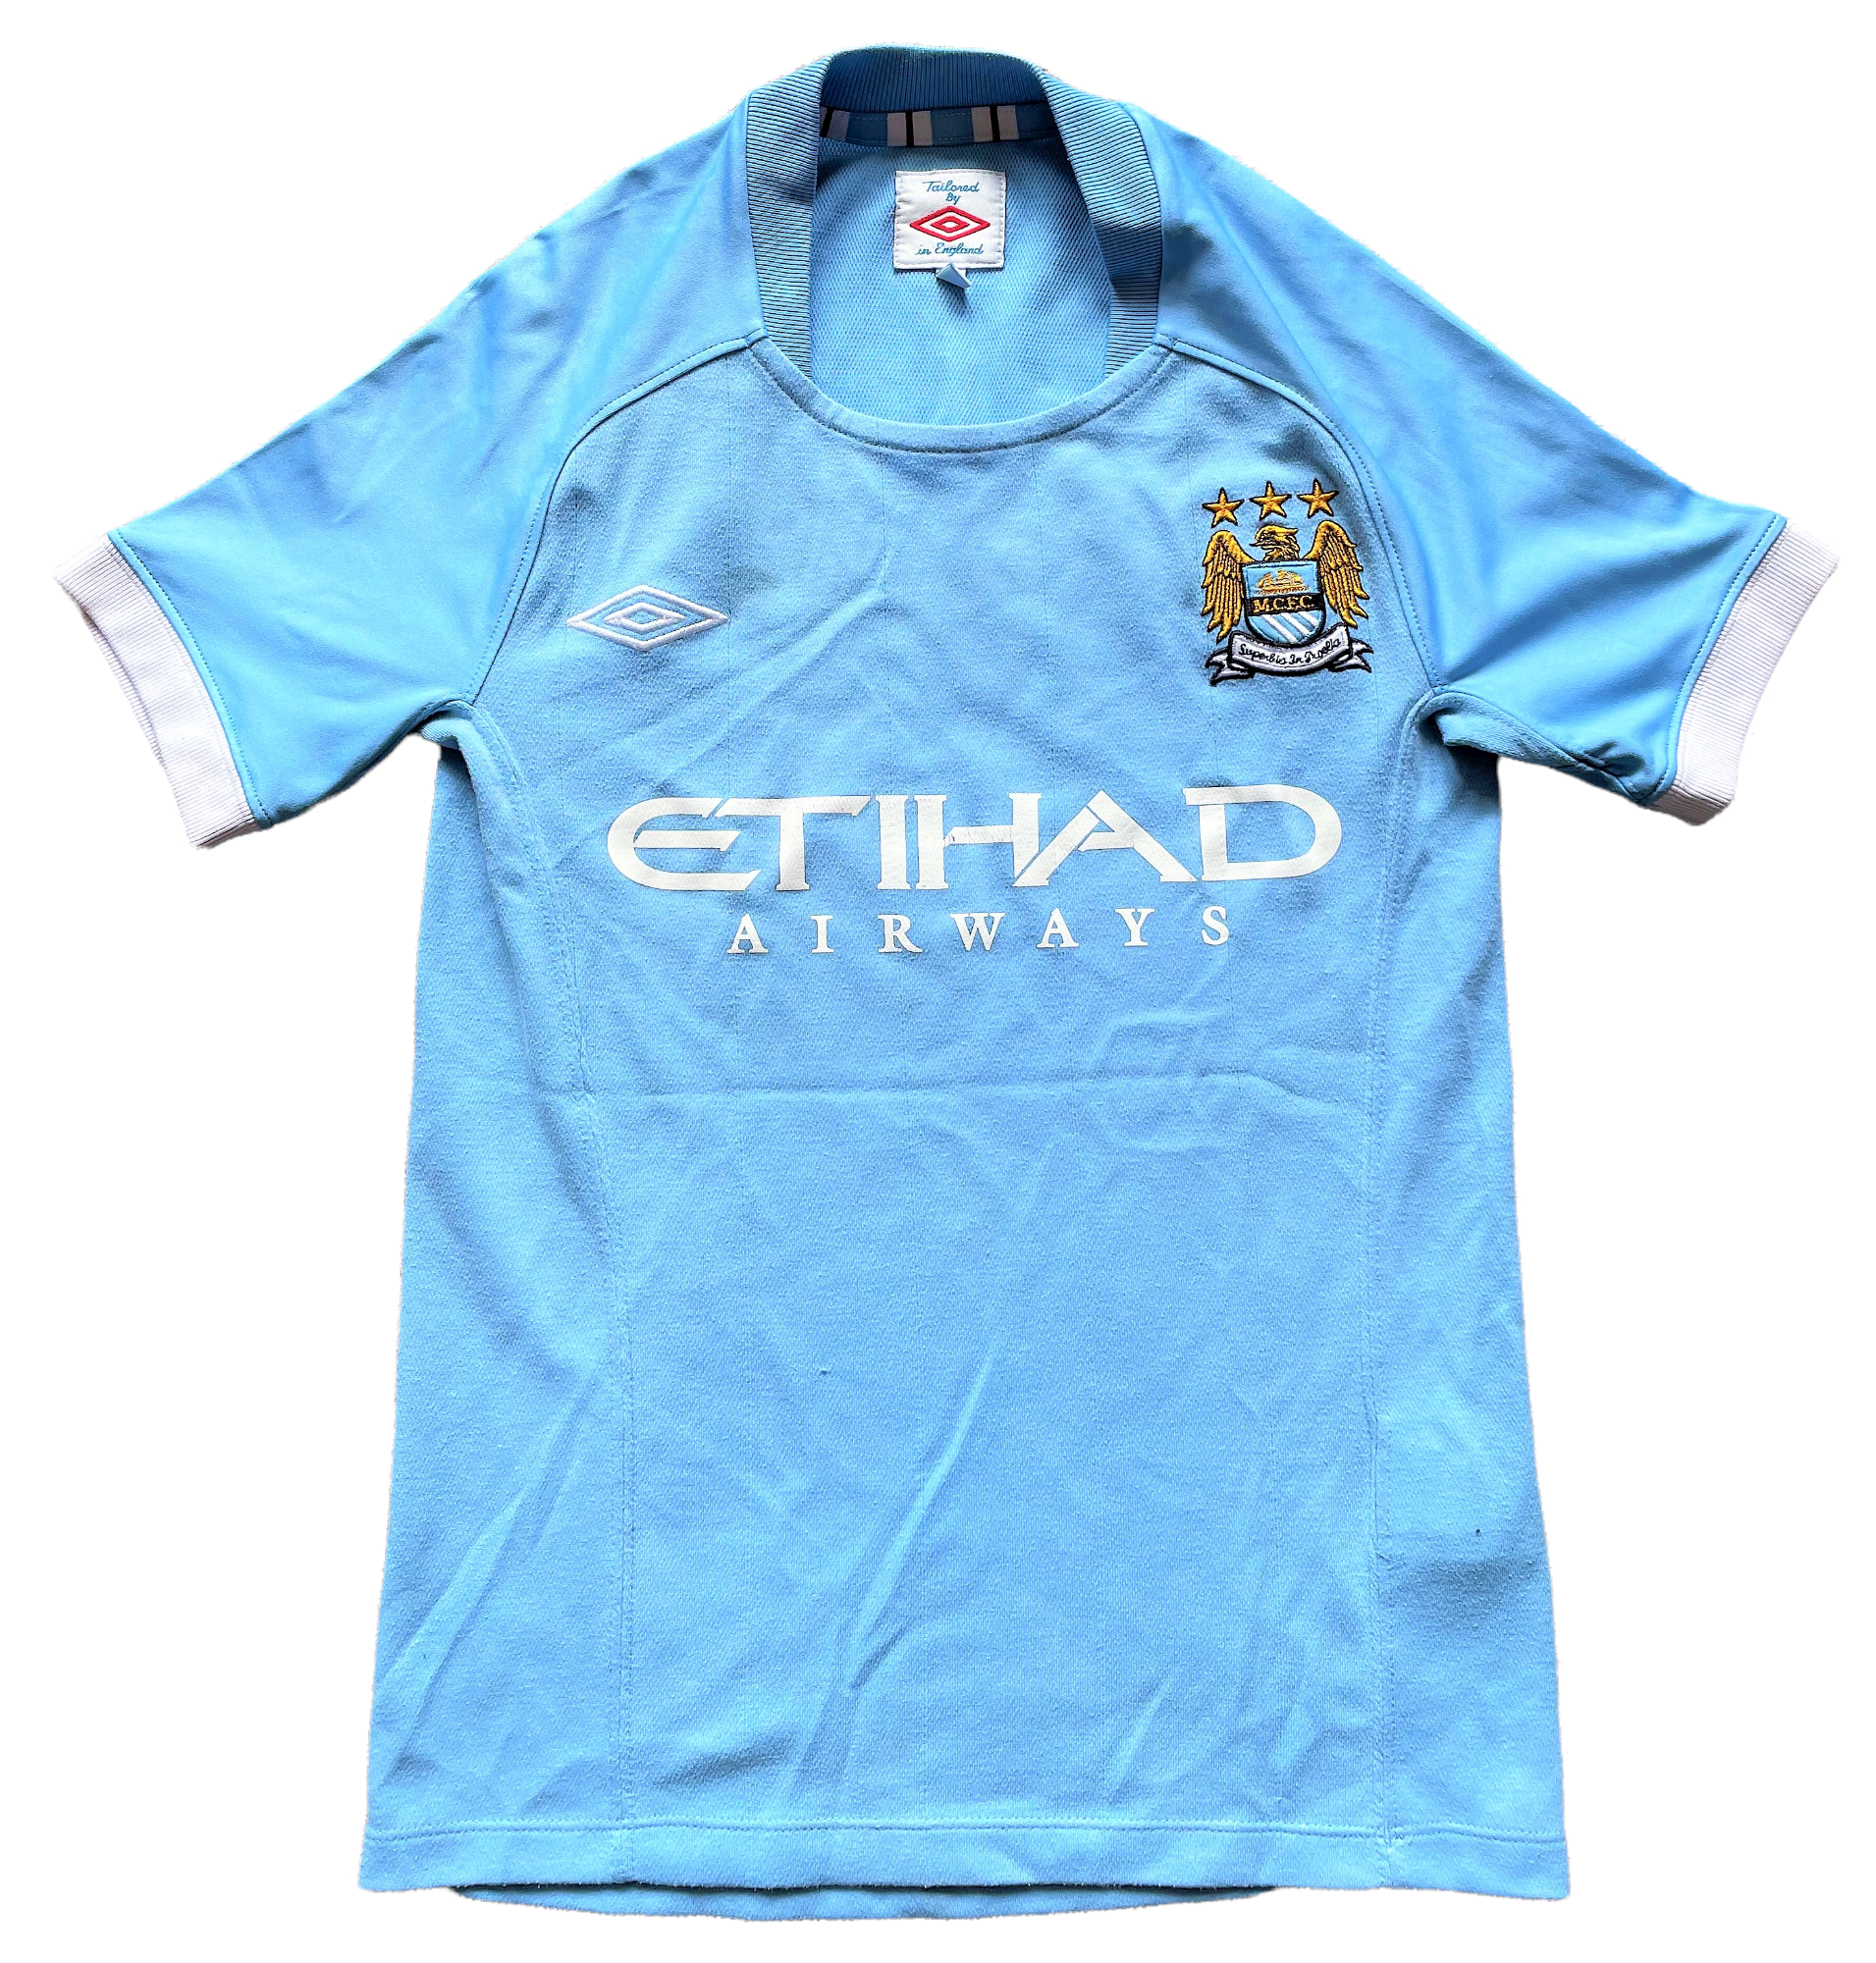 2010-11 Manchester City Home Shirt (good) Size 134